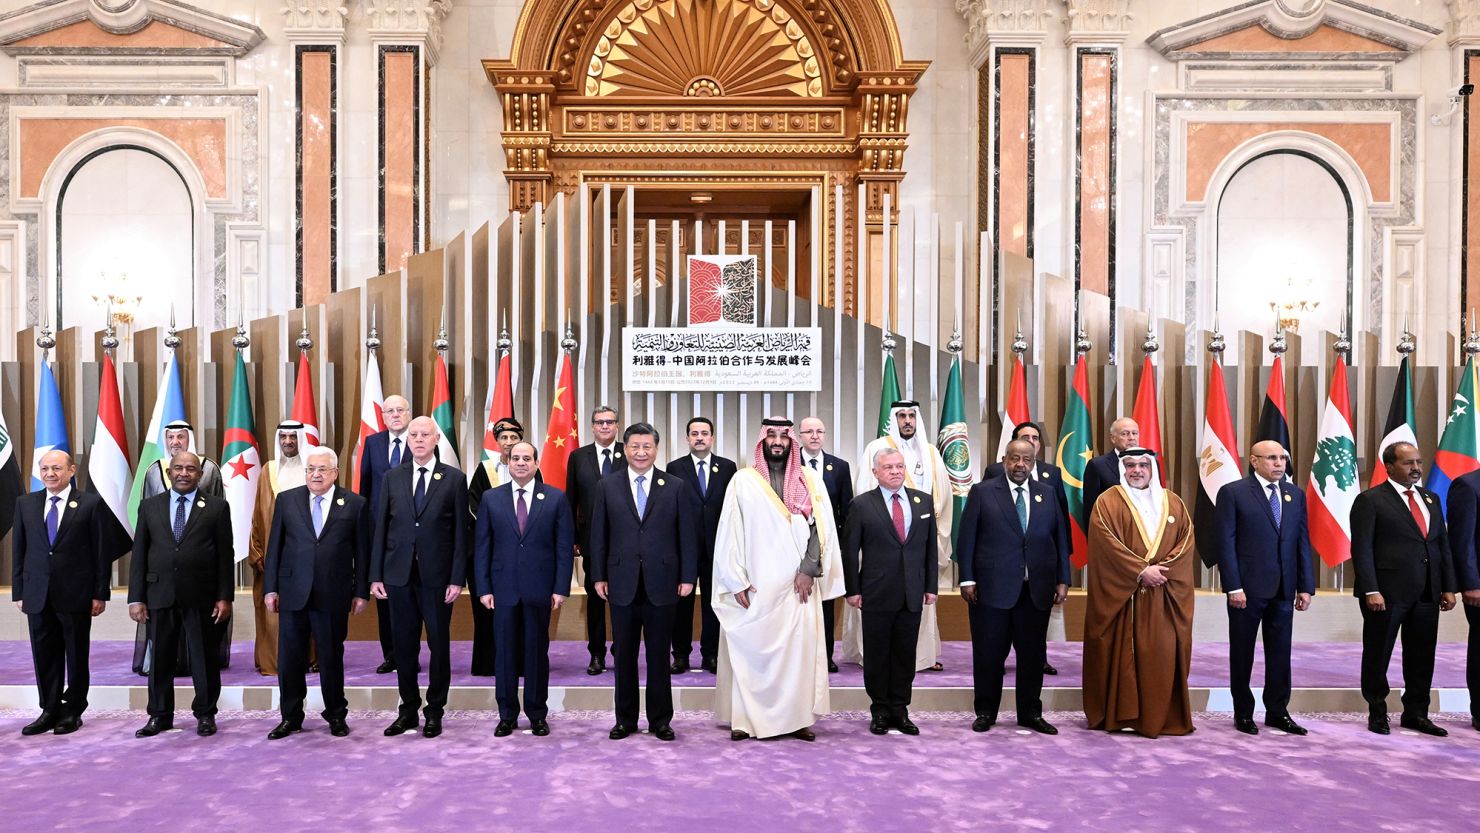 Саудовская аравия лидеры страны. Си Цзиньпин в Саудовской Аравии. Совет сотрудничества арабских государств Персидского залива (ССАГПЗ). Саммит в Саудовской Аравии 2023 участники. XI Cinpin bin Salman.